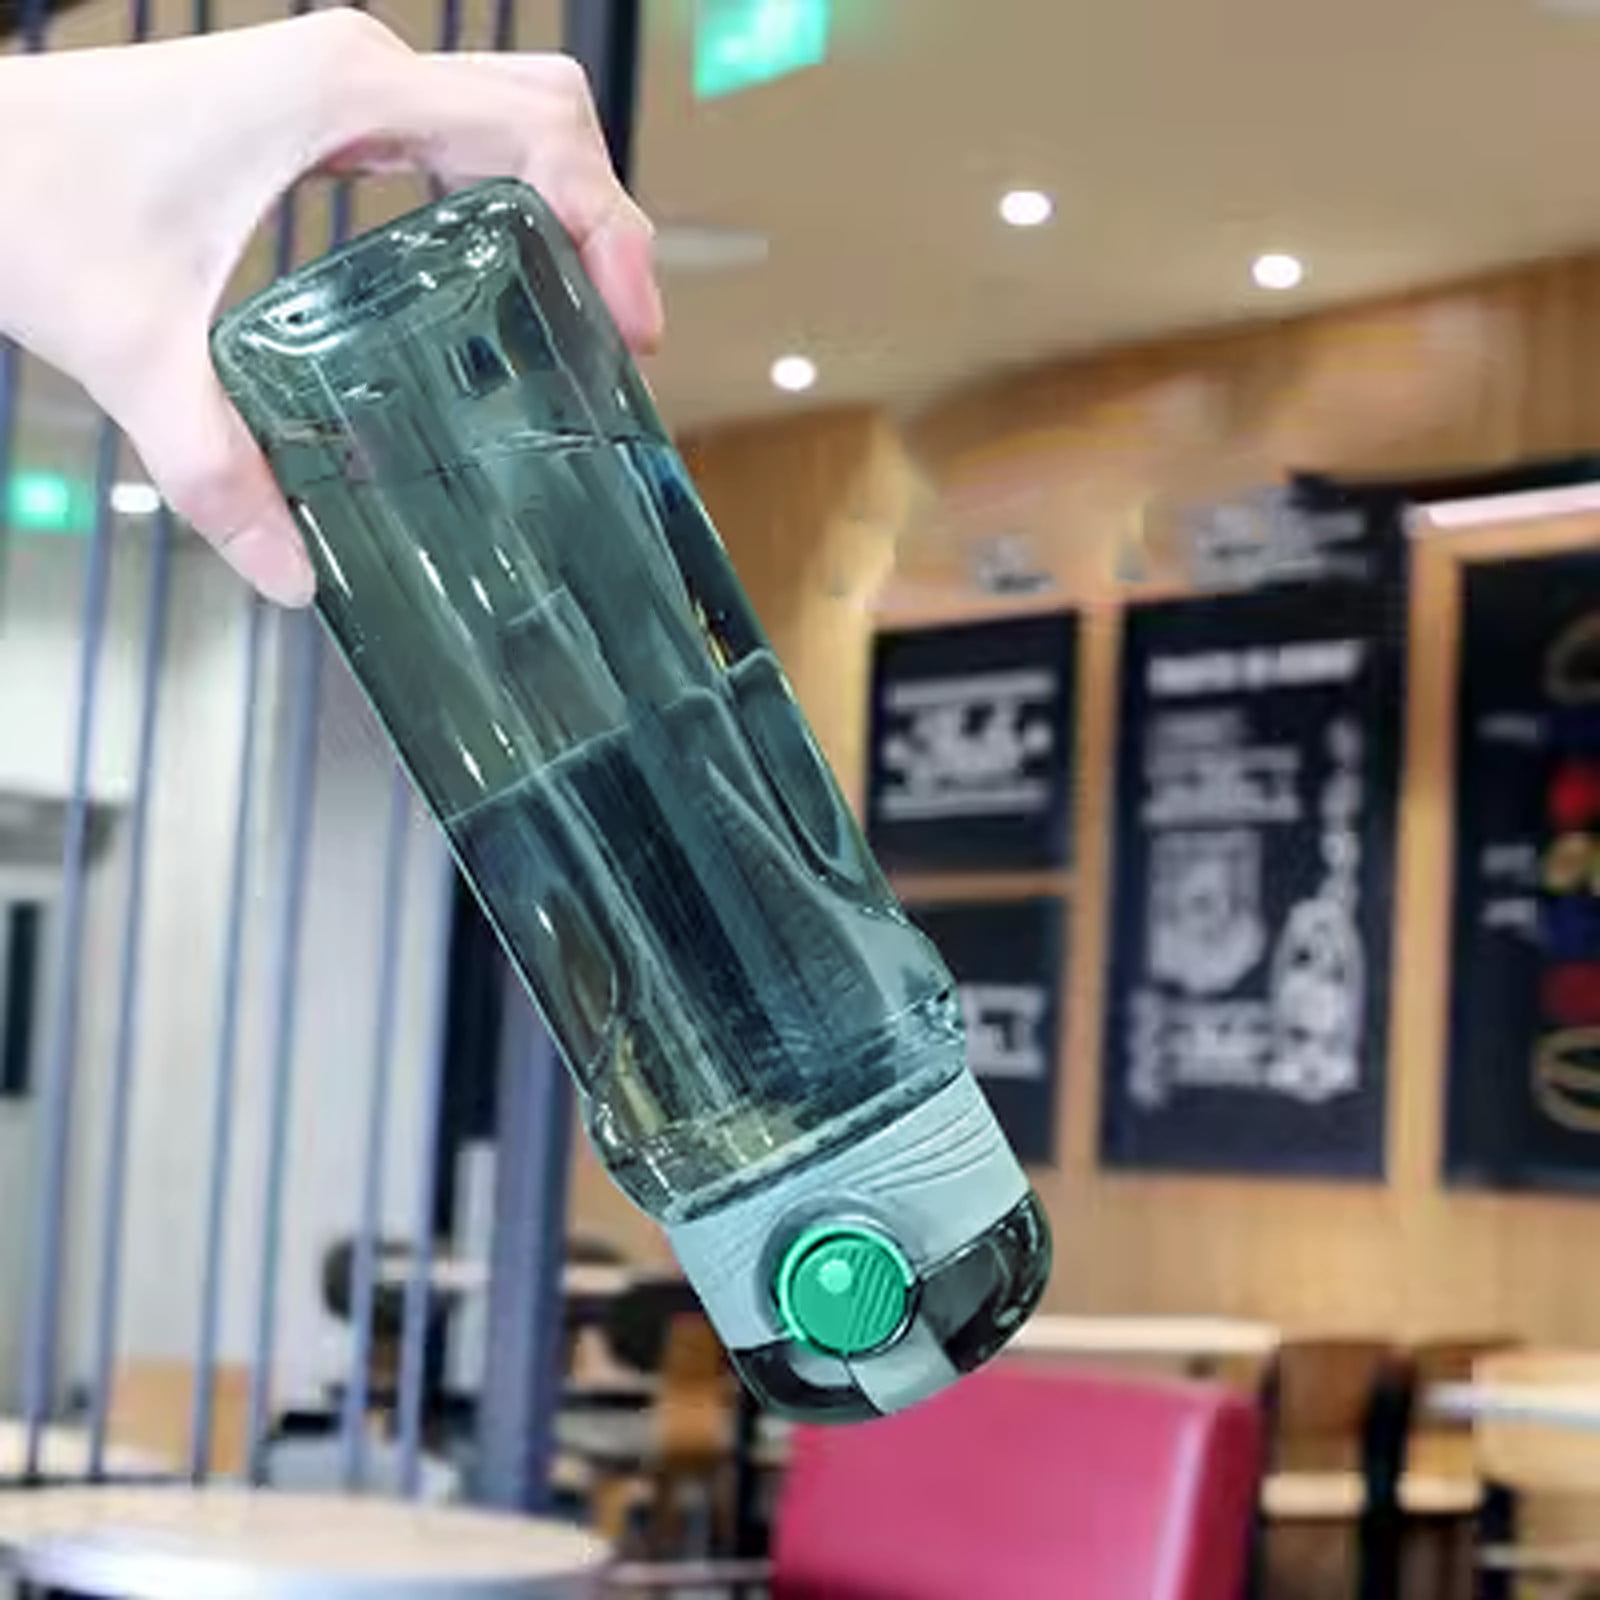 Water Bottle Large – The Wheeling Artisan Center Shop